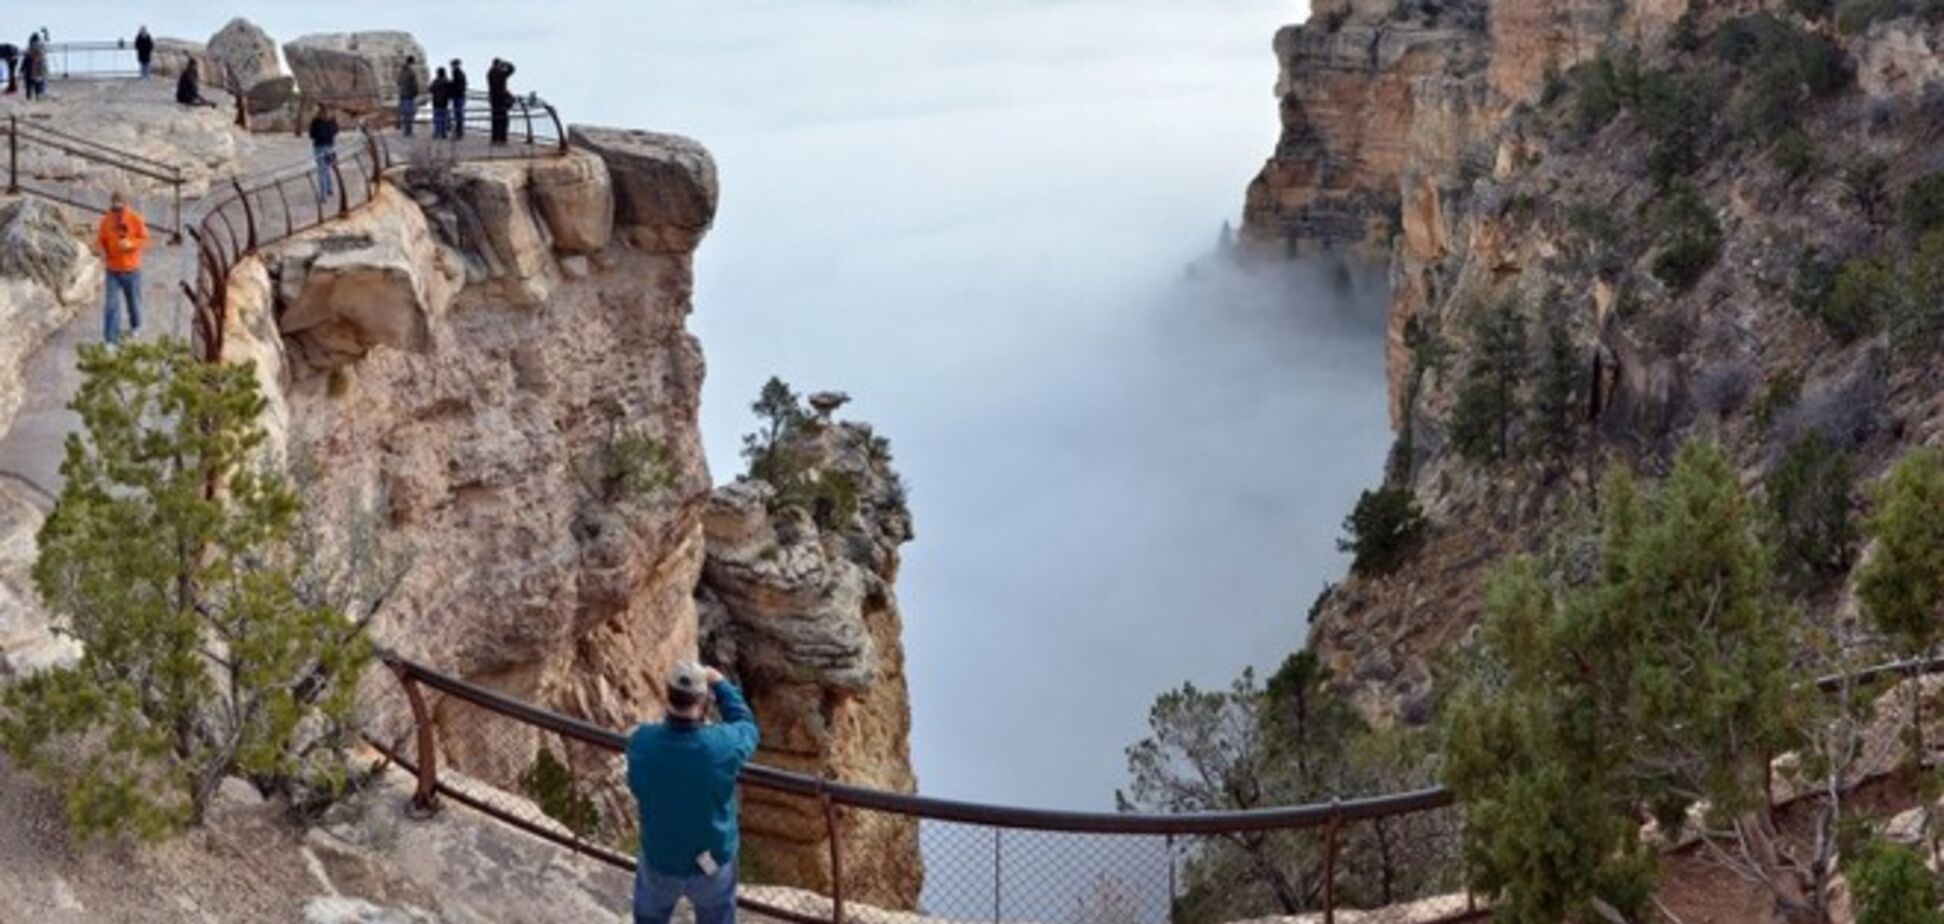 Удивительное природное явление 'засекли' в знаменитом Гранд-Каньоне: опубликованы фото и видео